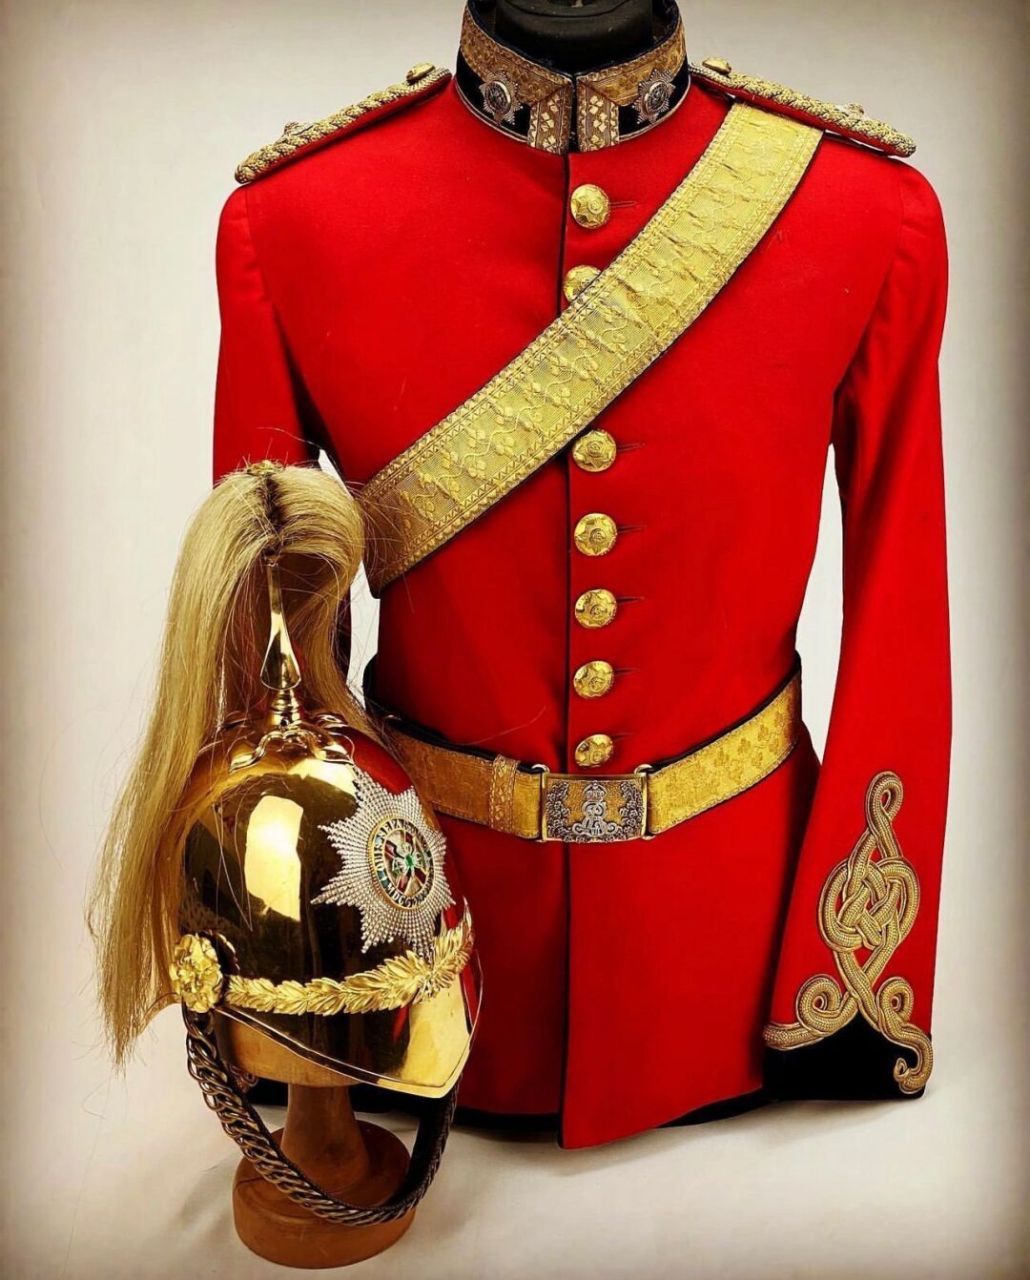 军事收藏:皇家爱尔兰龙骑兵军官礼服 第四(皇家爱尔兰)龙骑兵卫队军官